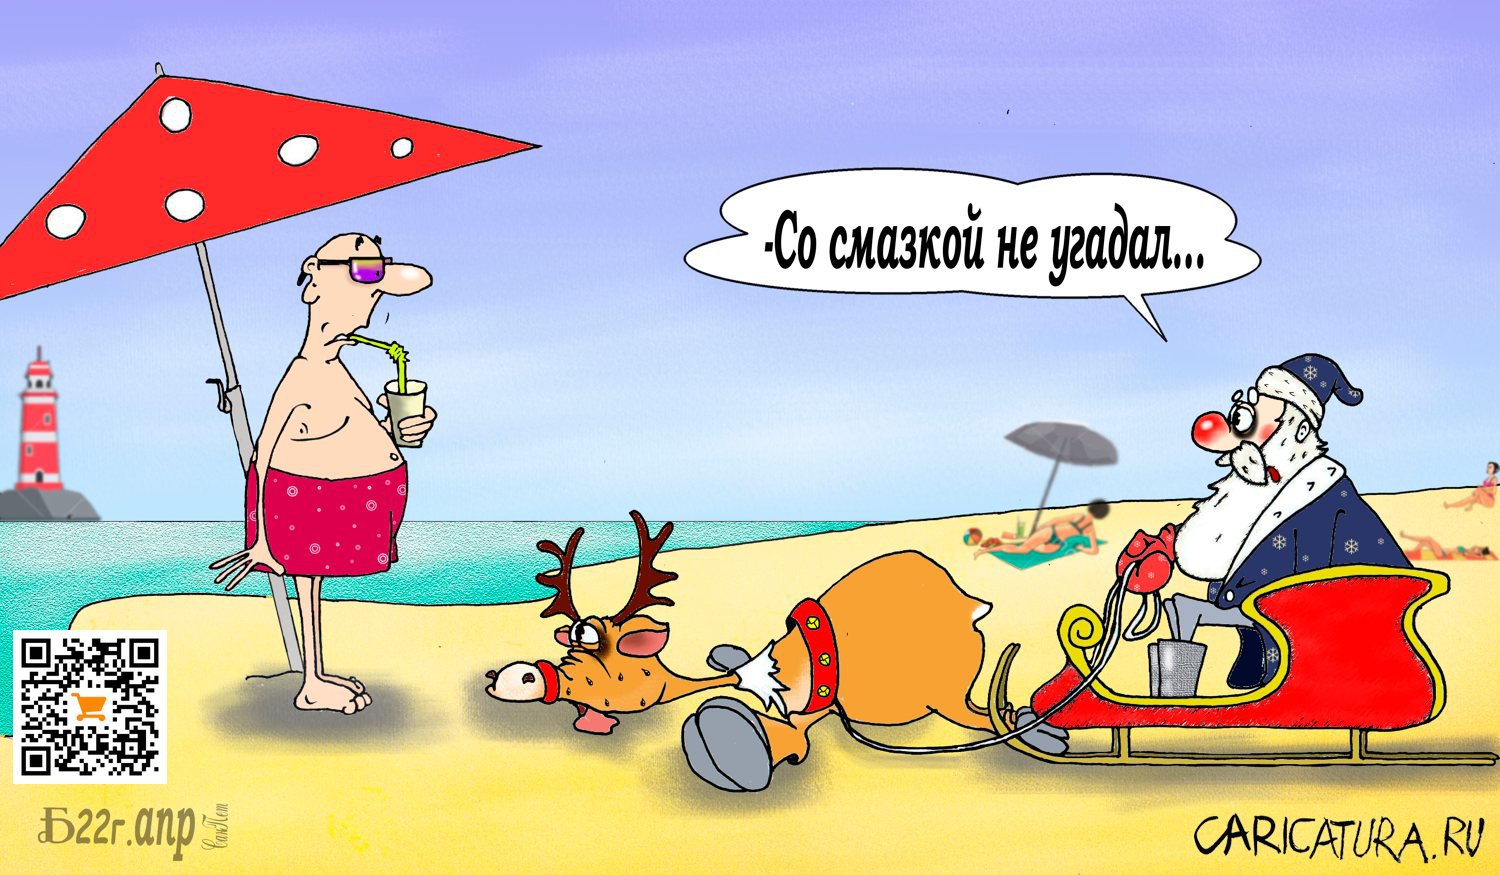 Карикатура "Про неугаданную смазку", Борис Демин